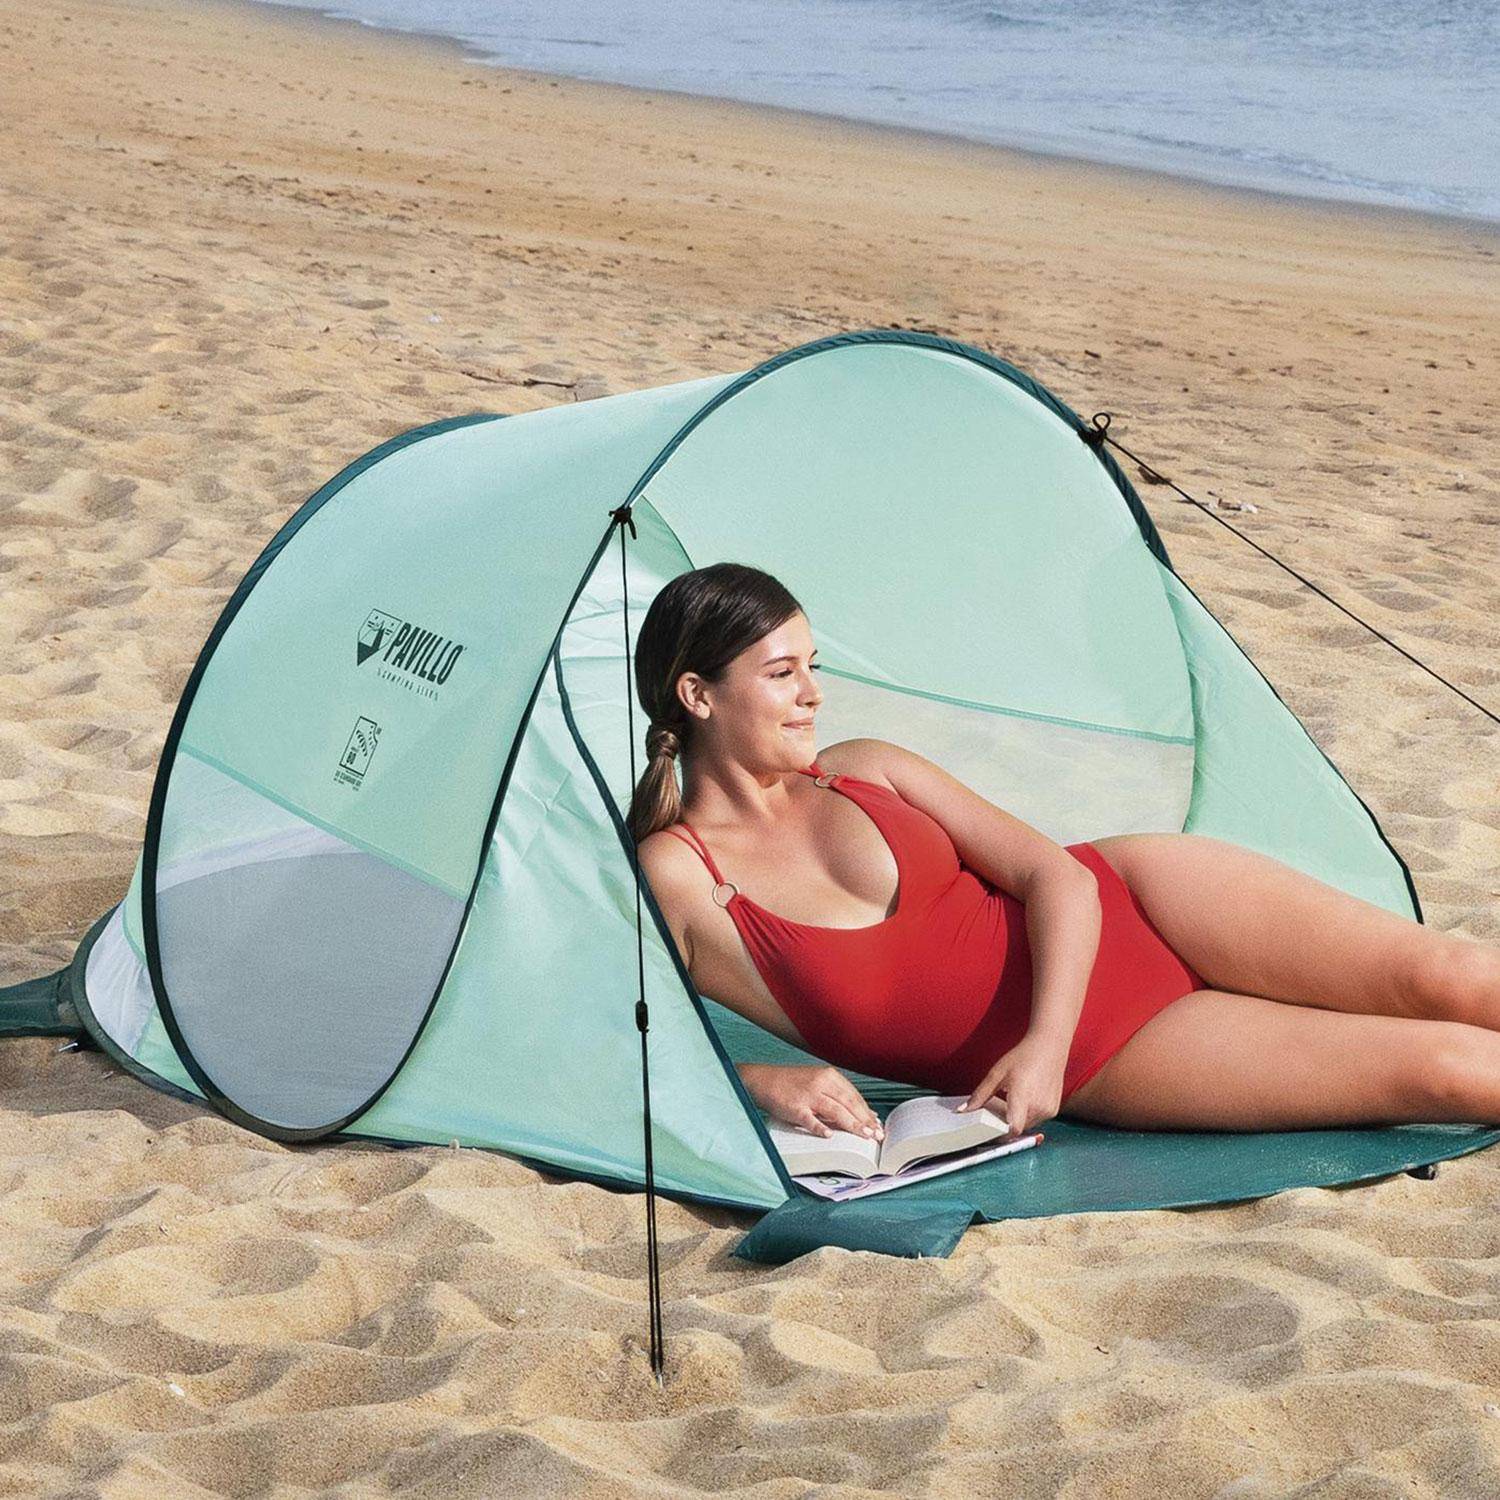 Tenda de praia Pavillo Acatama Pop Up - 2 pessoas - 200x120x90 cm Photo2